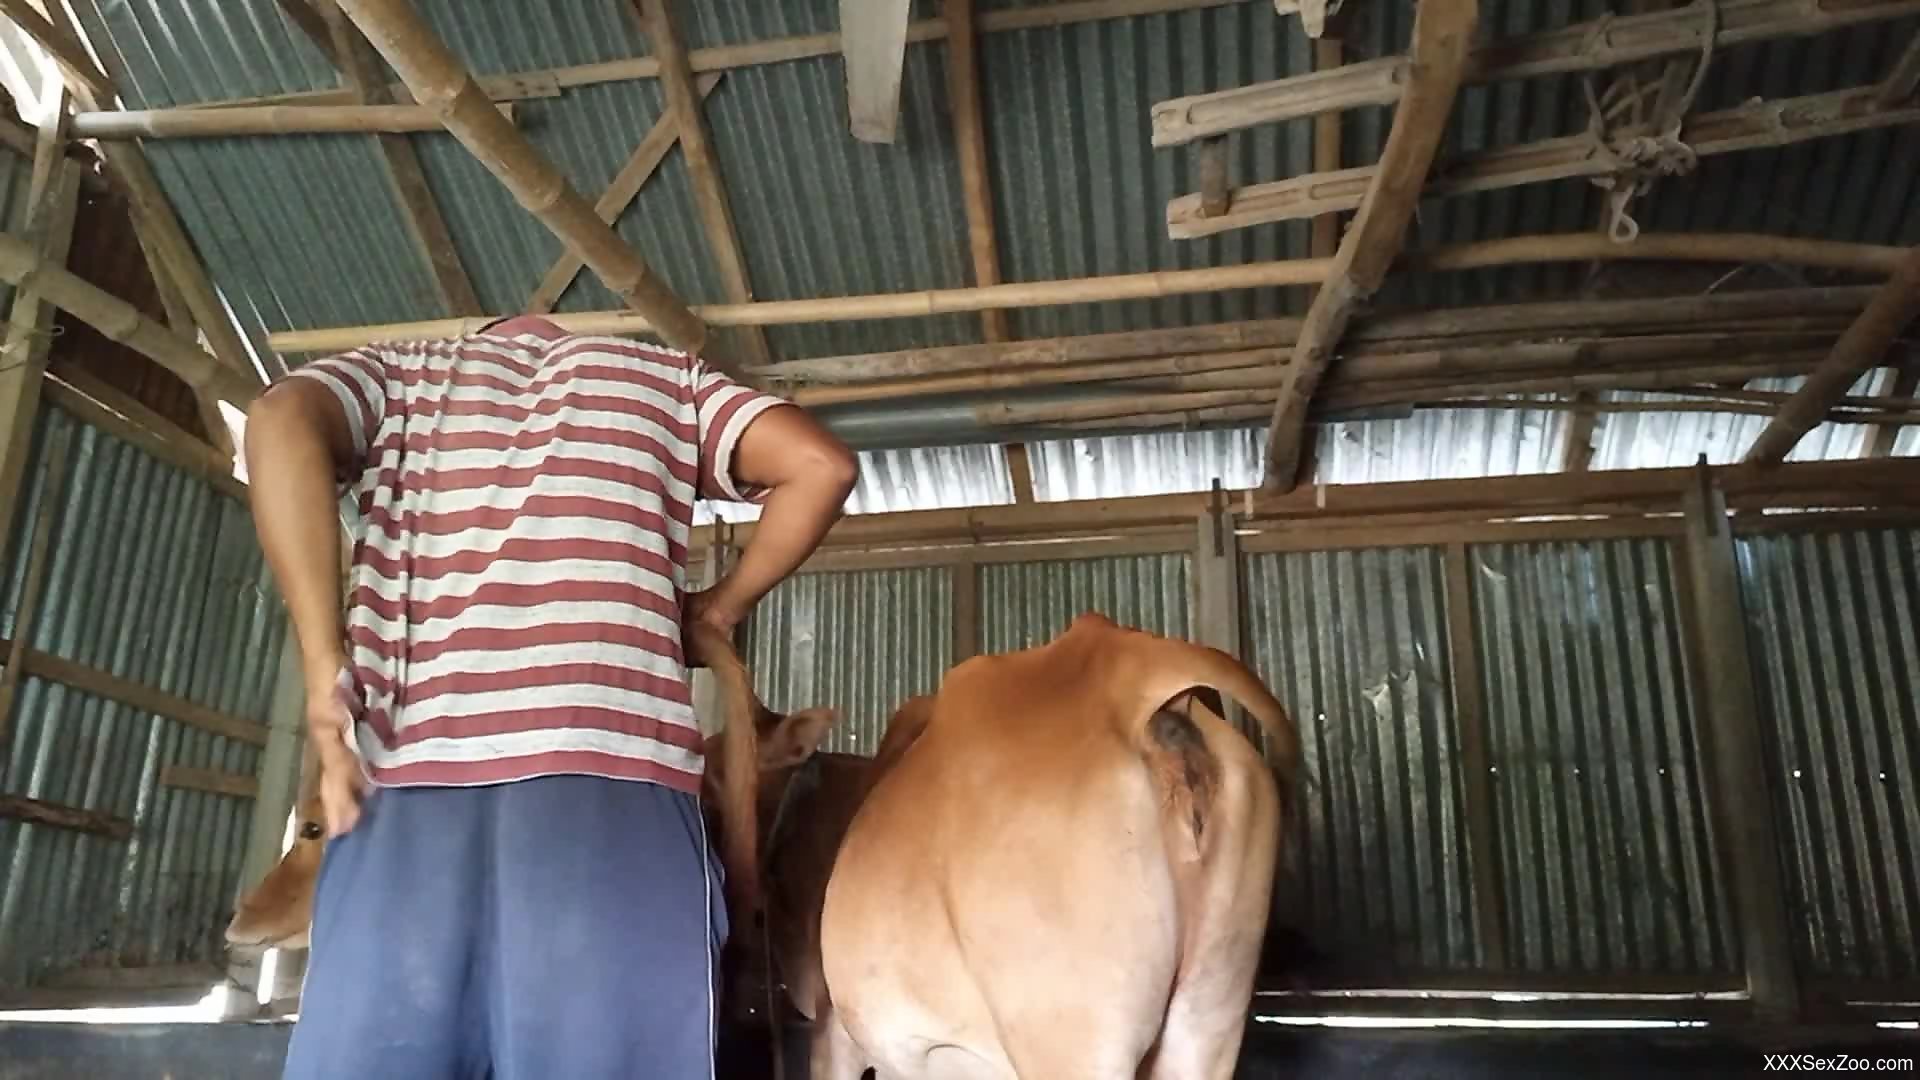 Xxxcaw - Horny farm guy craves cow's pussy for a few rounds - XXXSexZoo.com